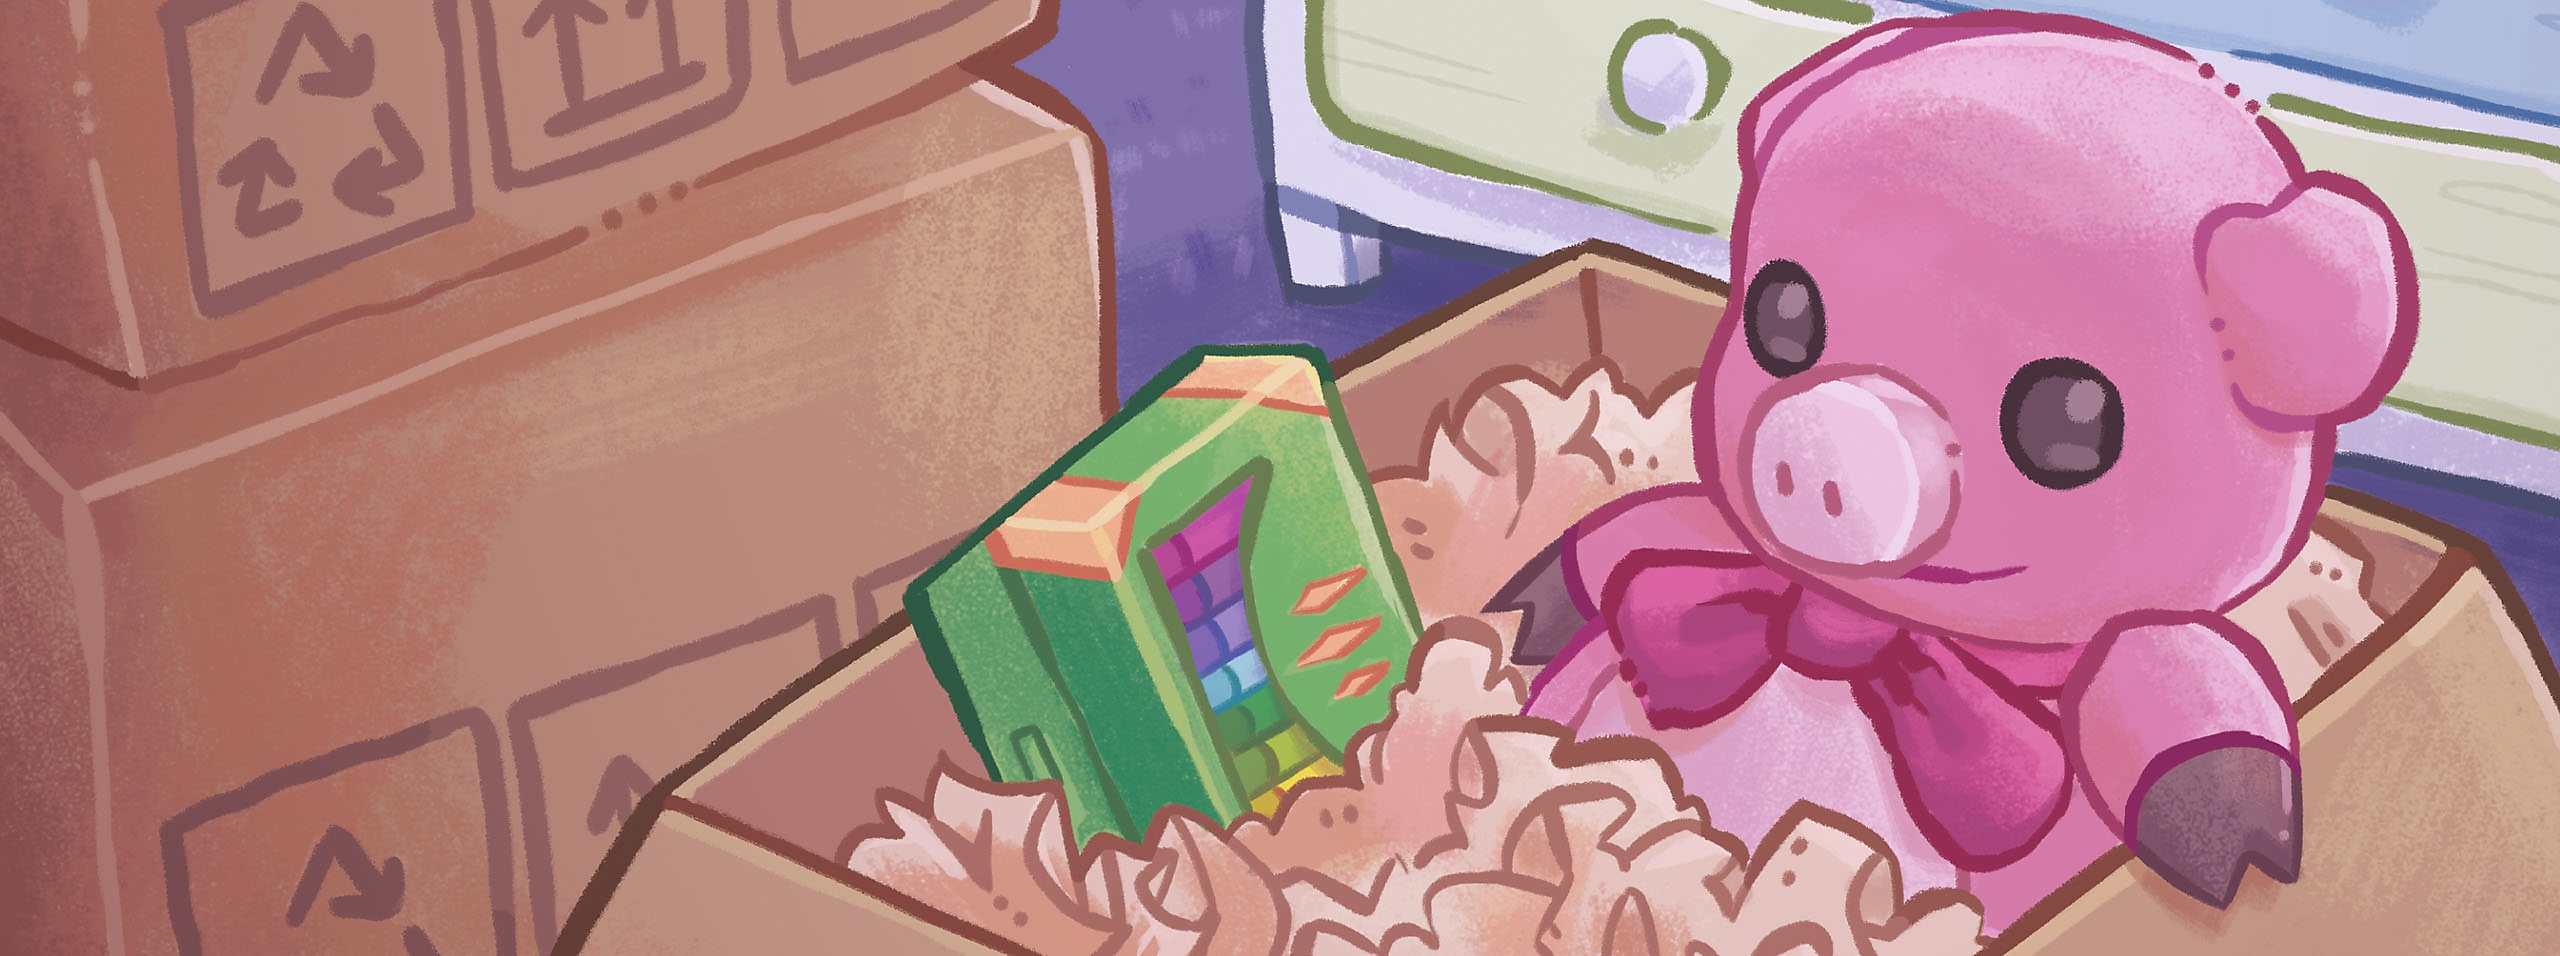 Unpacking - arte de herói mostrando uma caixa de papelão com porco rosa de brinquedo dentro